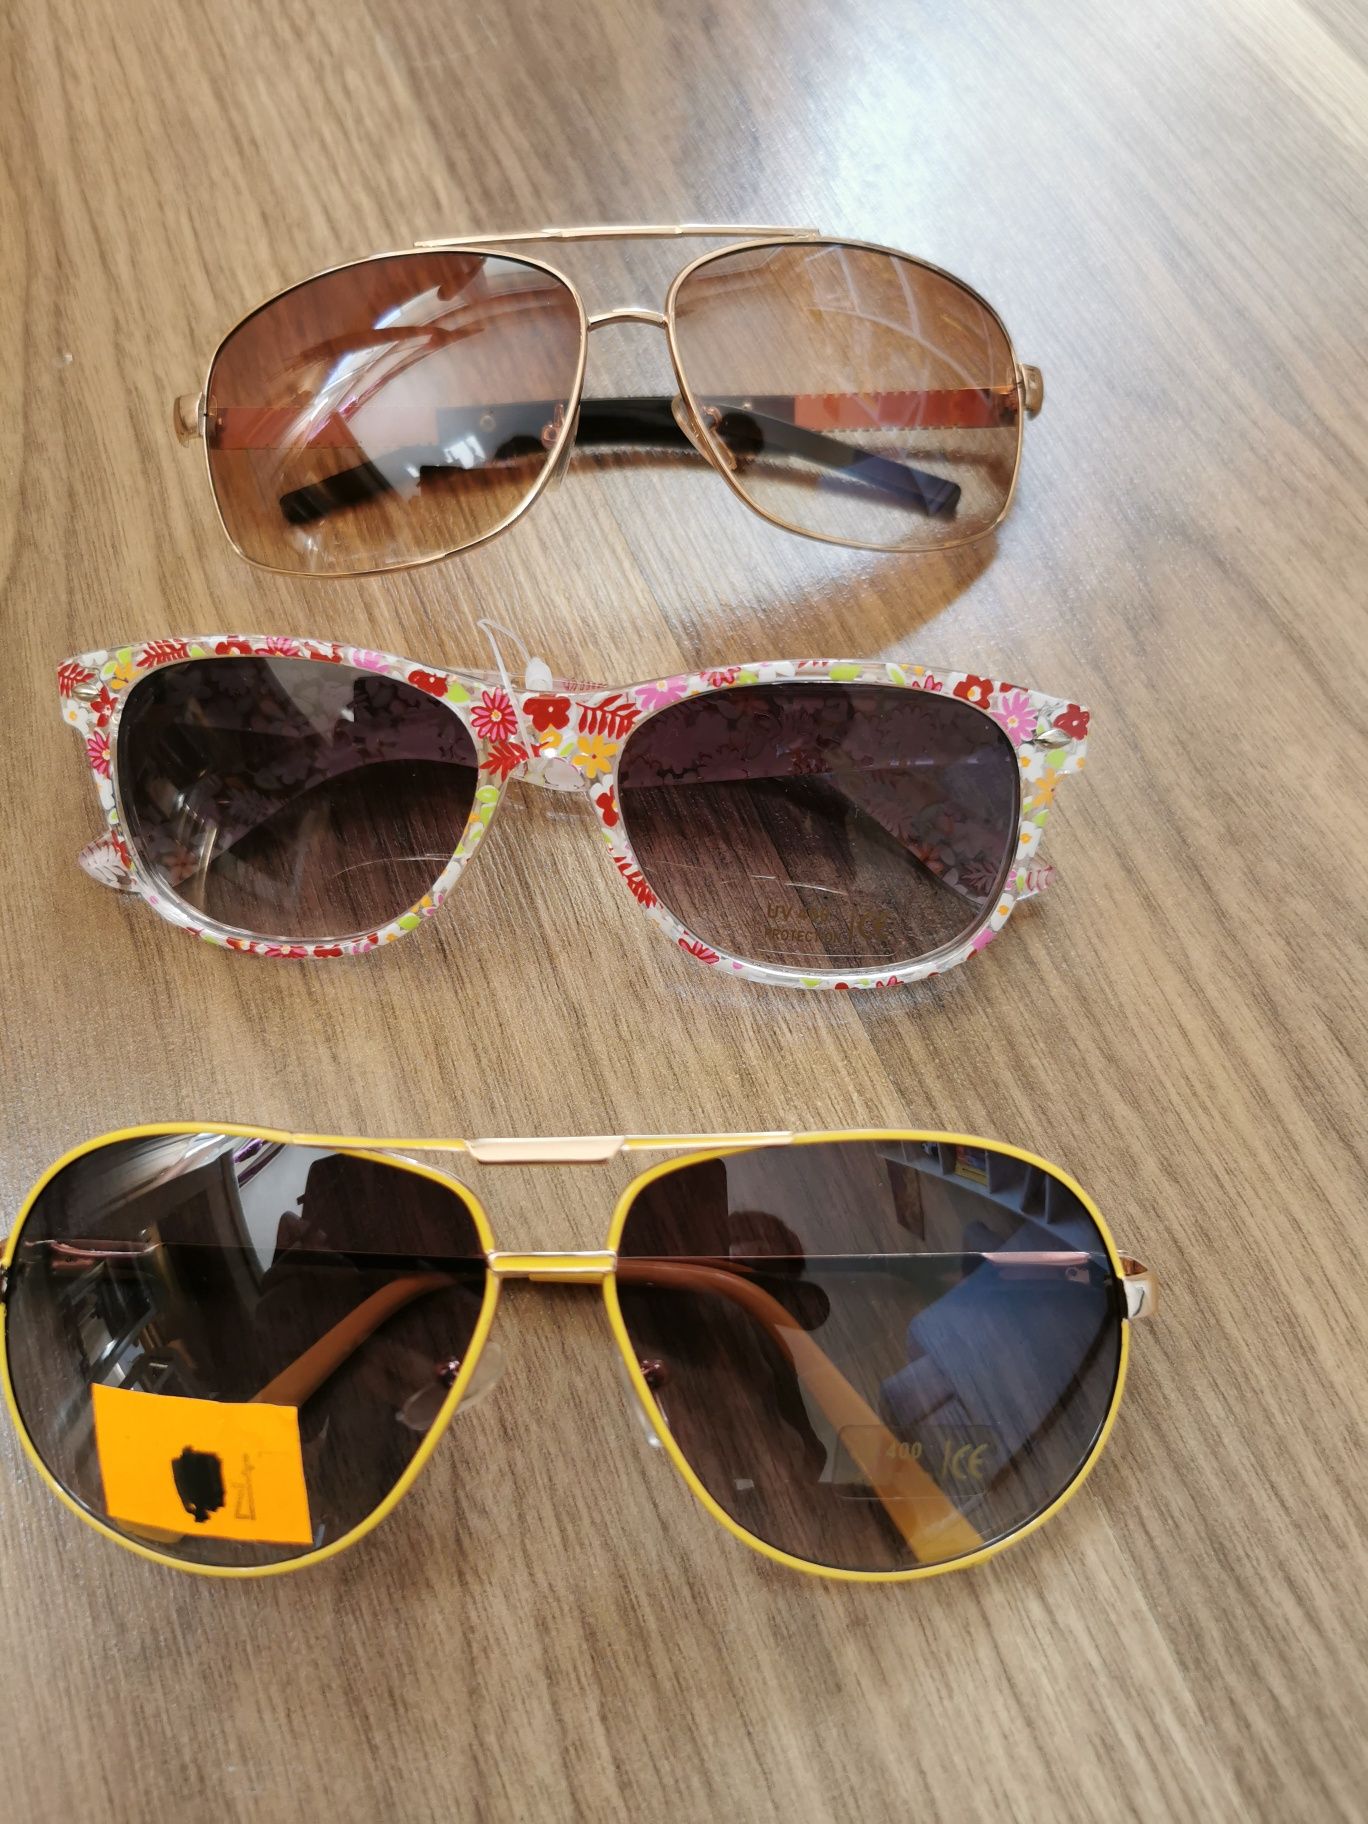 Zestaw nowych okularów przeciwsłonecznych 3 pary filtry policyjne i kw